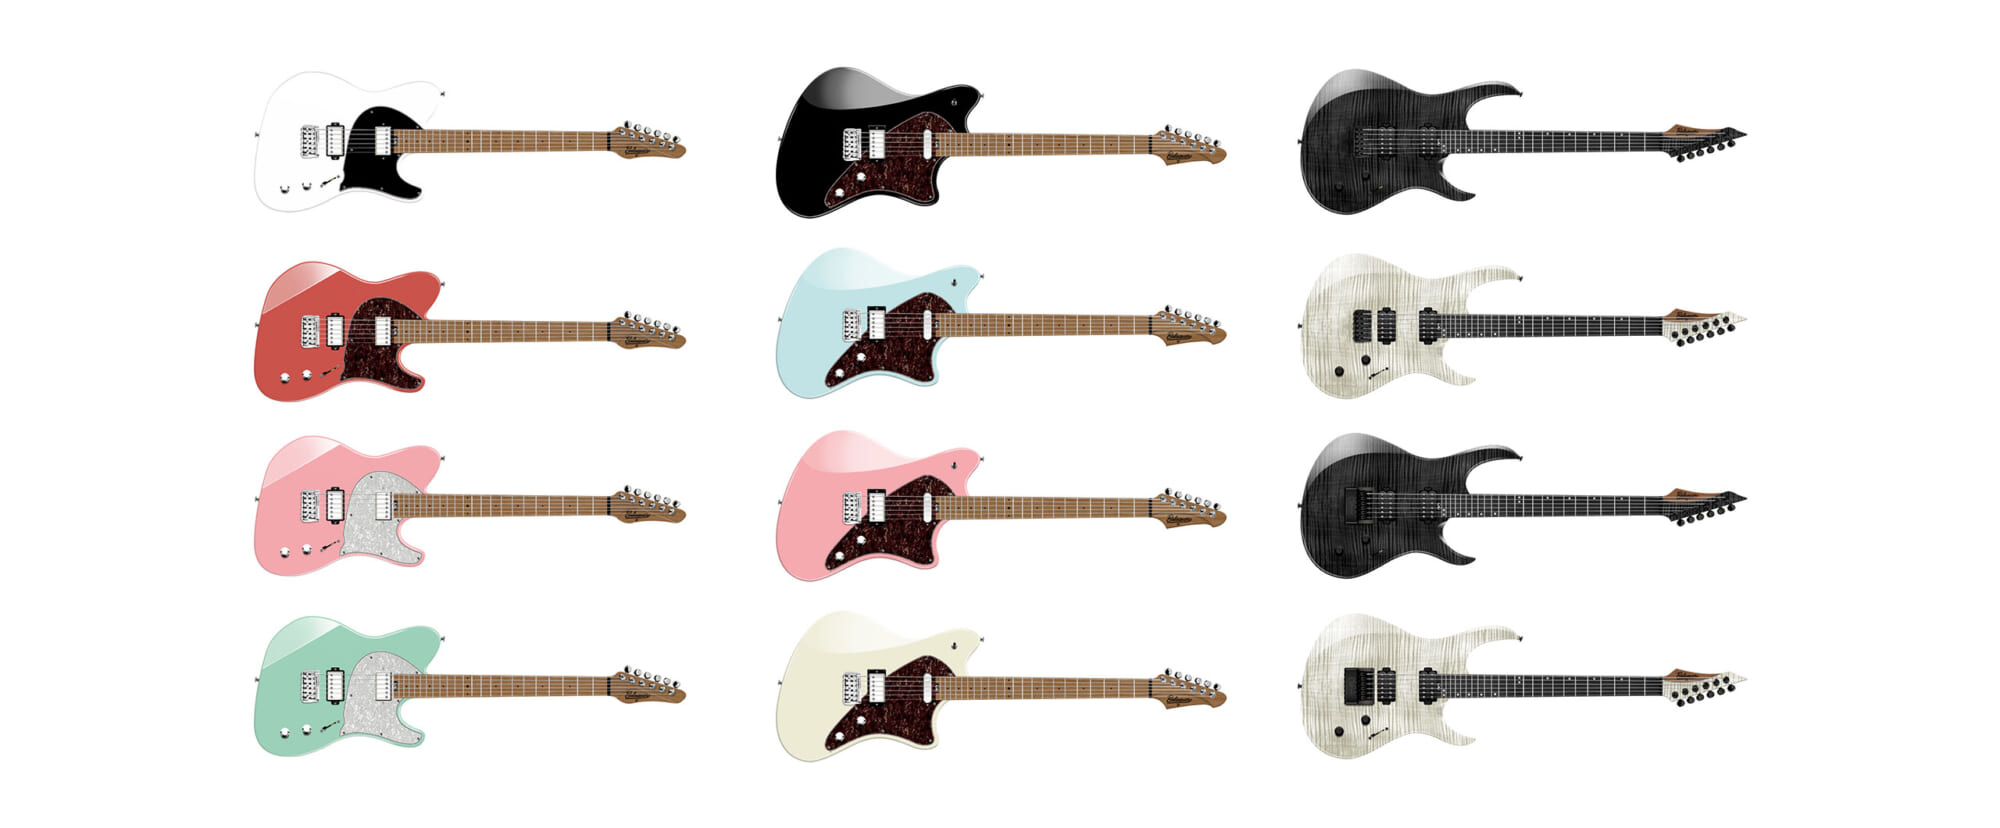 新興ギター・ブランド、バラゲール・ギターズの製品3モデルを紹介